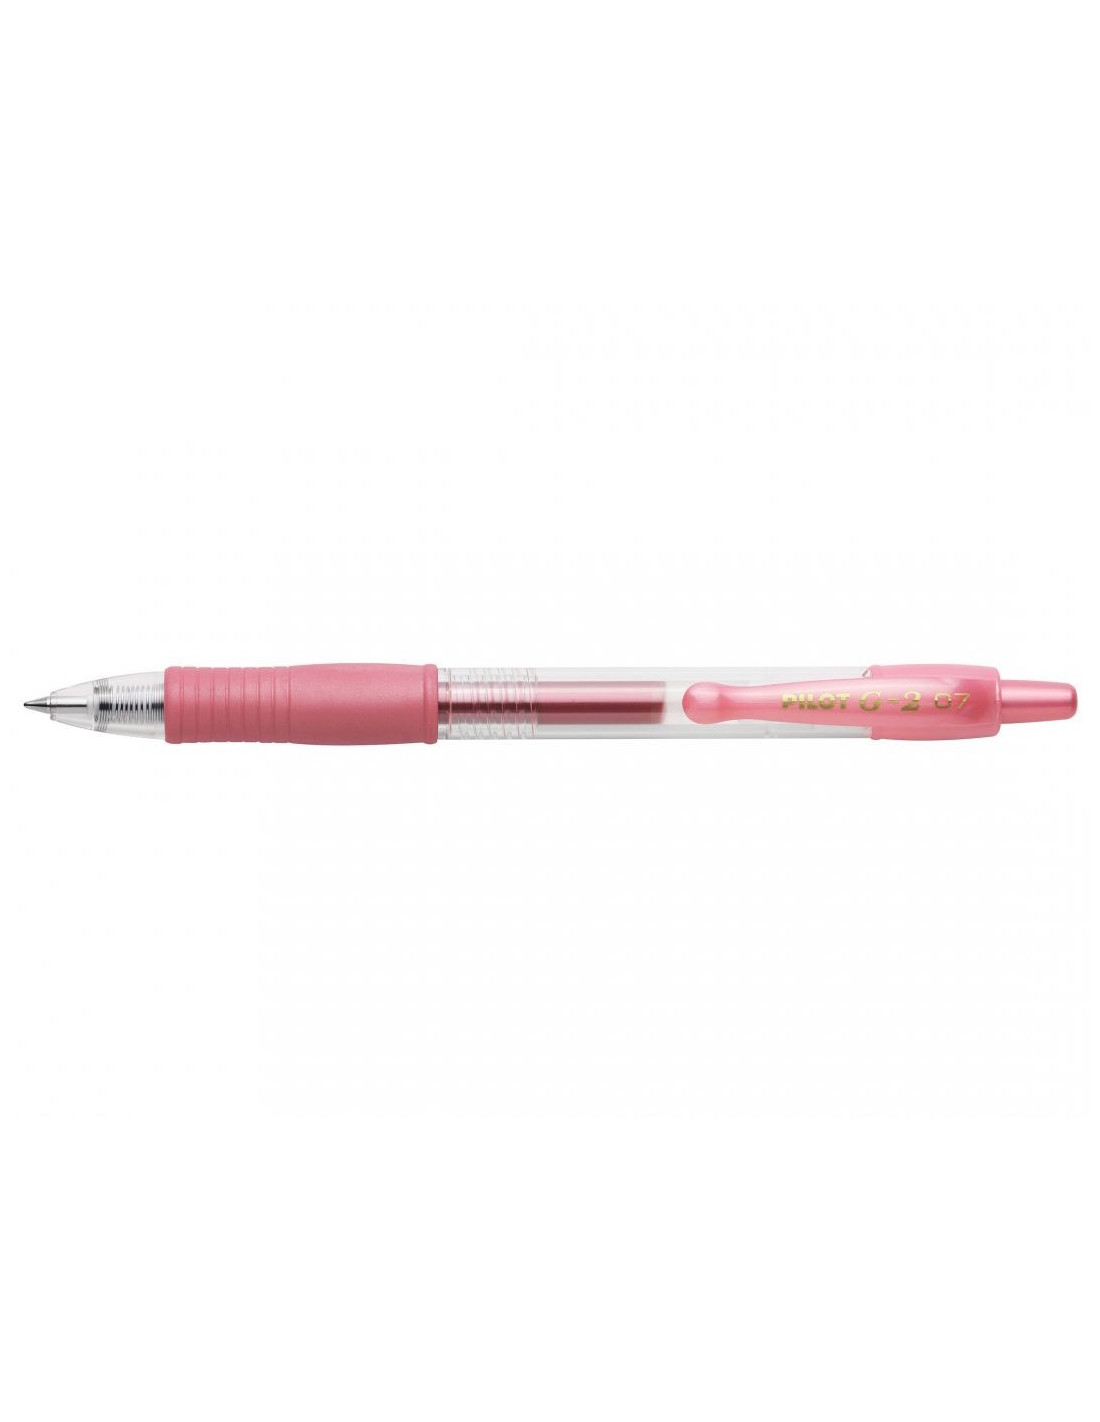 G-2 Metallic roller pen - Pink - Pilot